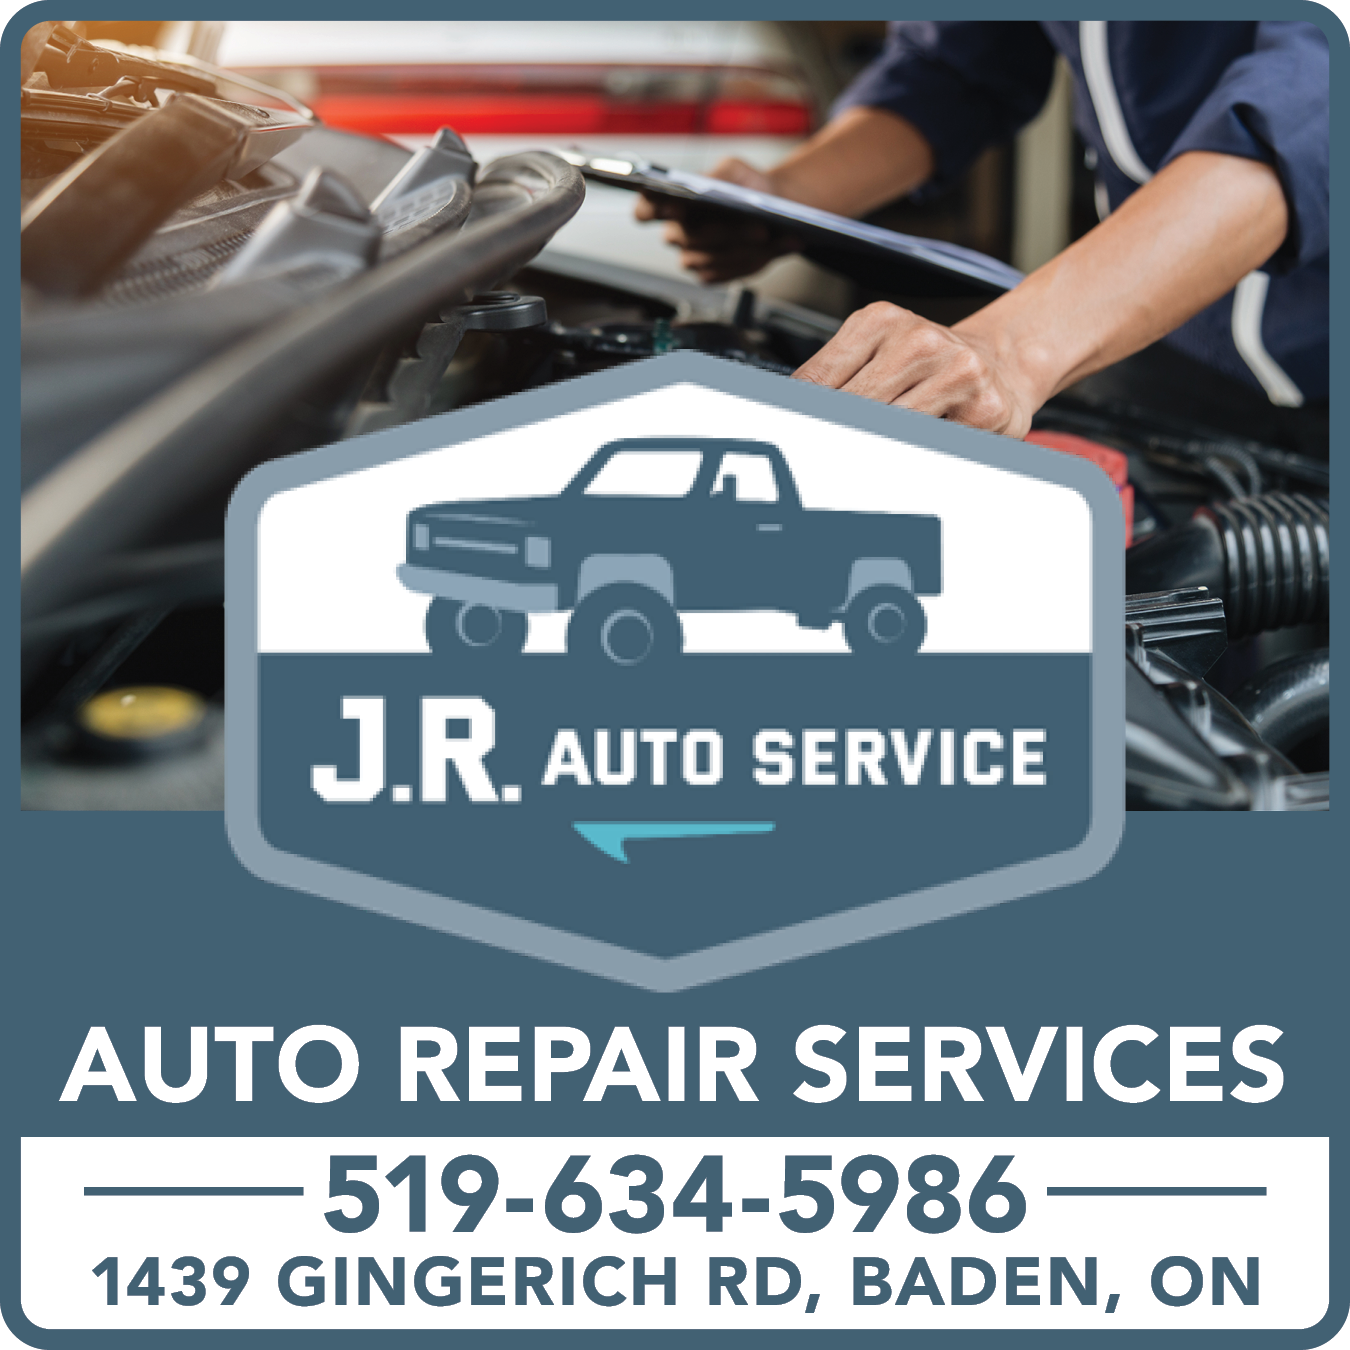 JR Auto Service